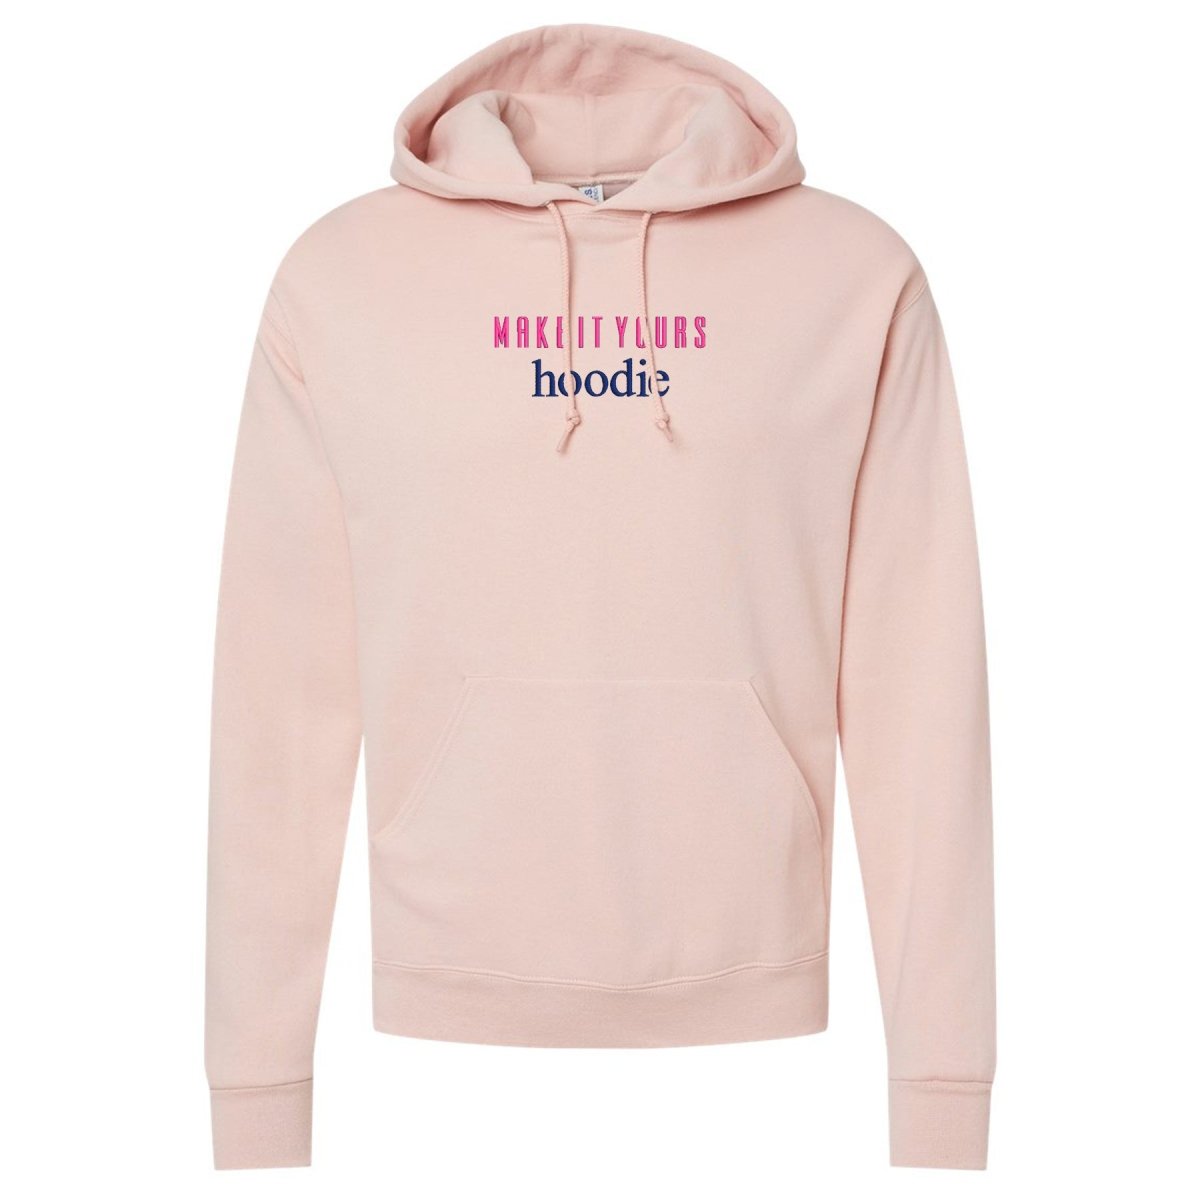 Make It Yours™ 'Hoodie' Hooded Sweatshirt - United Monograms